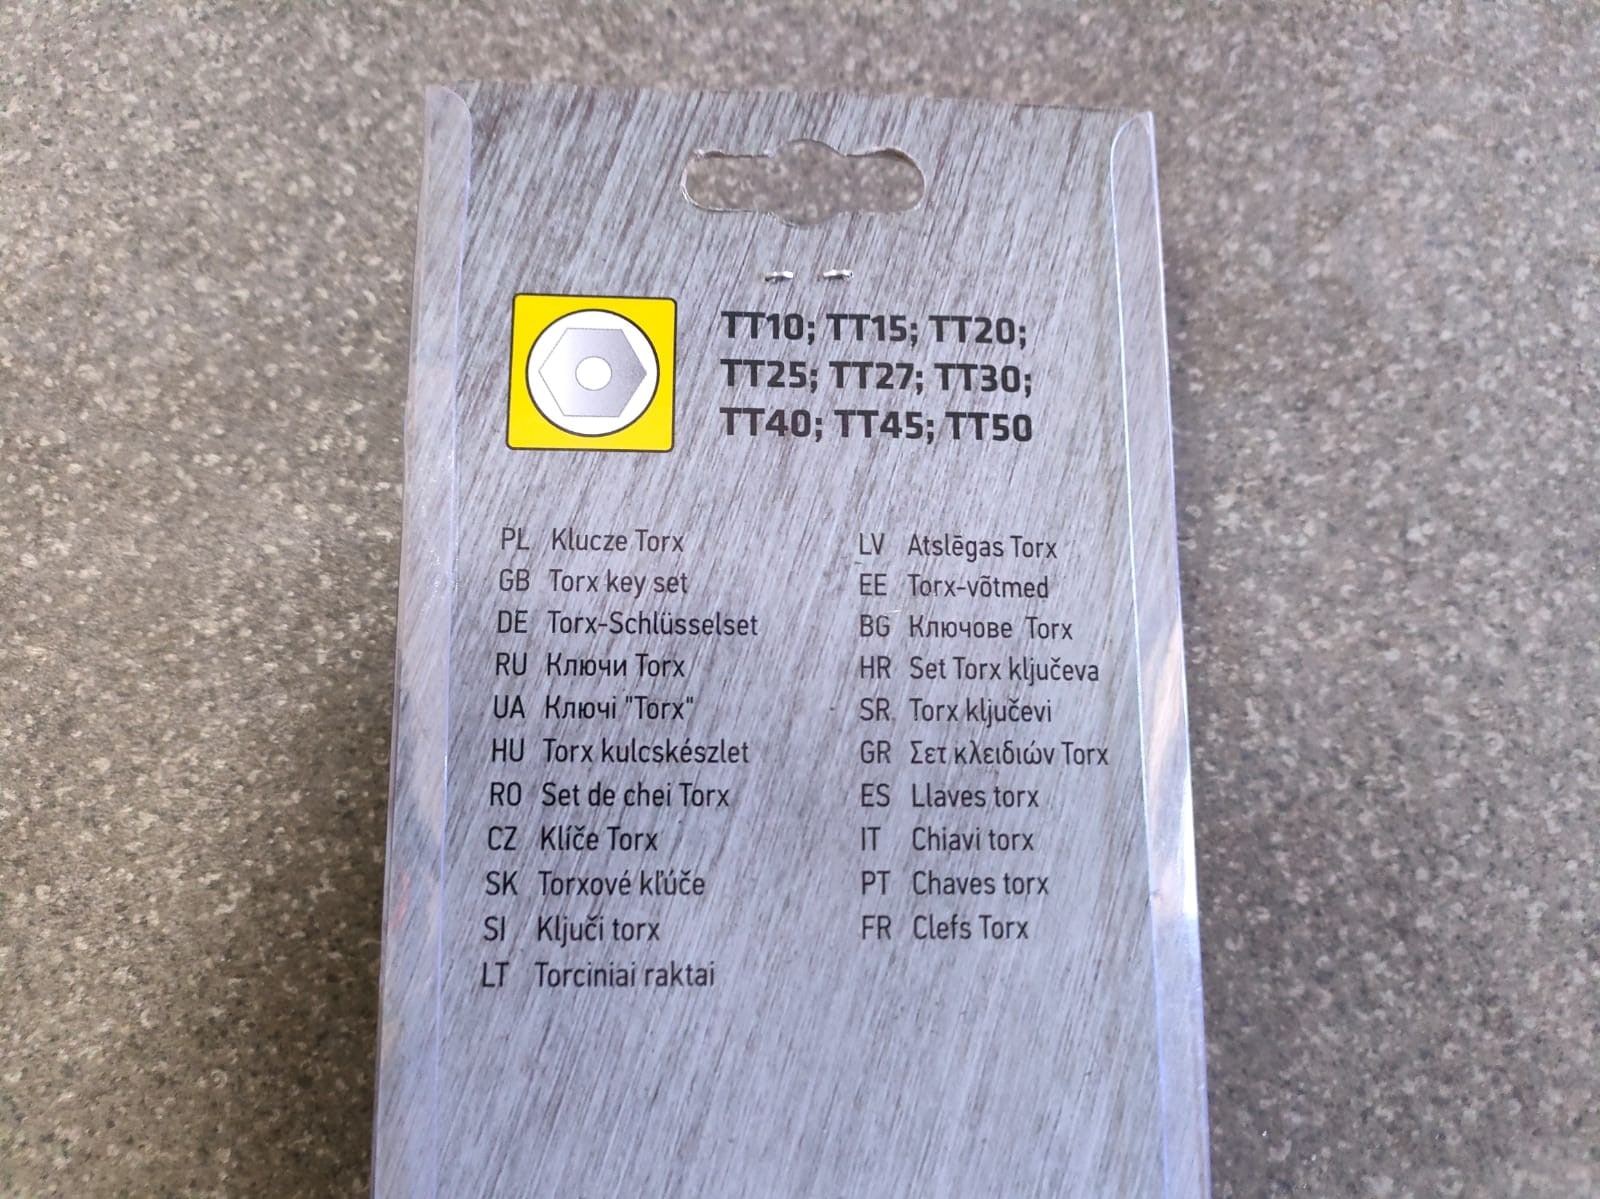 Набор ключей звездочек с отверстием torx TOPEX размер T10 - T50 (9 шт)